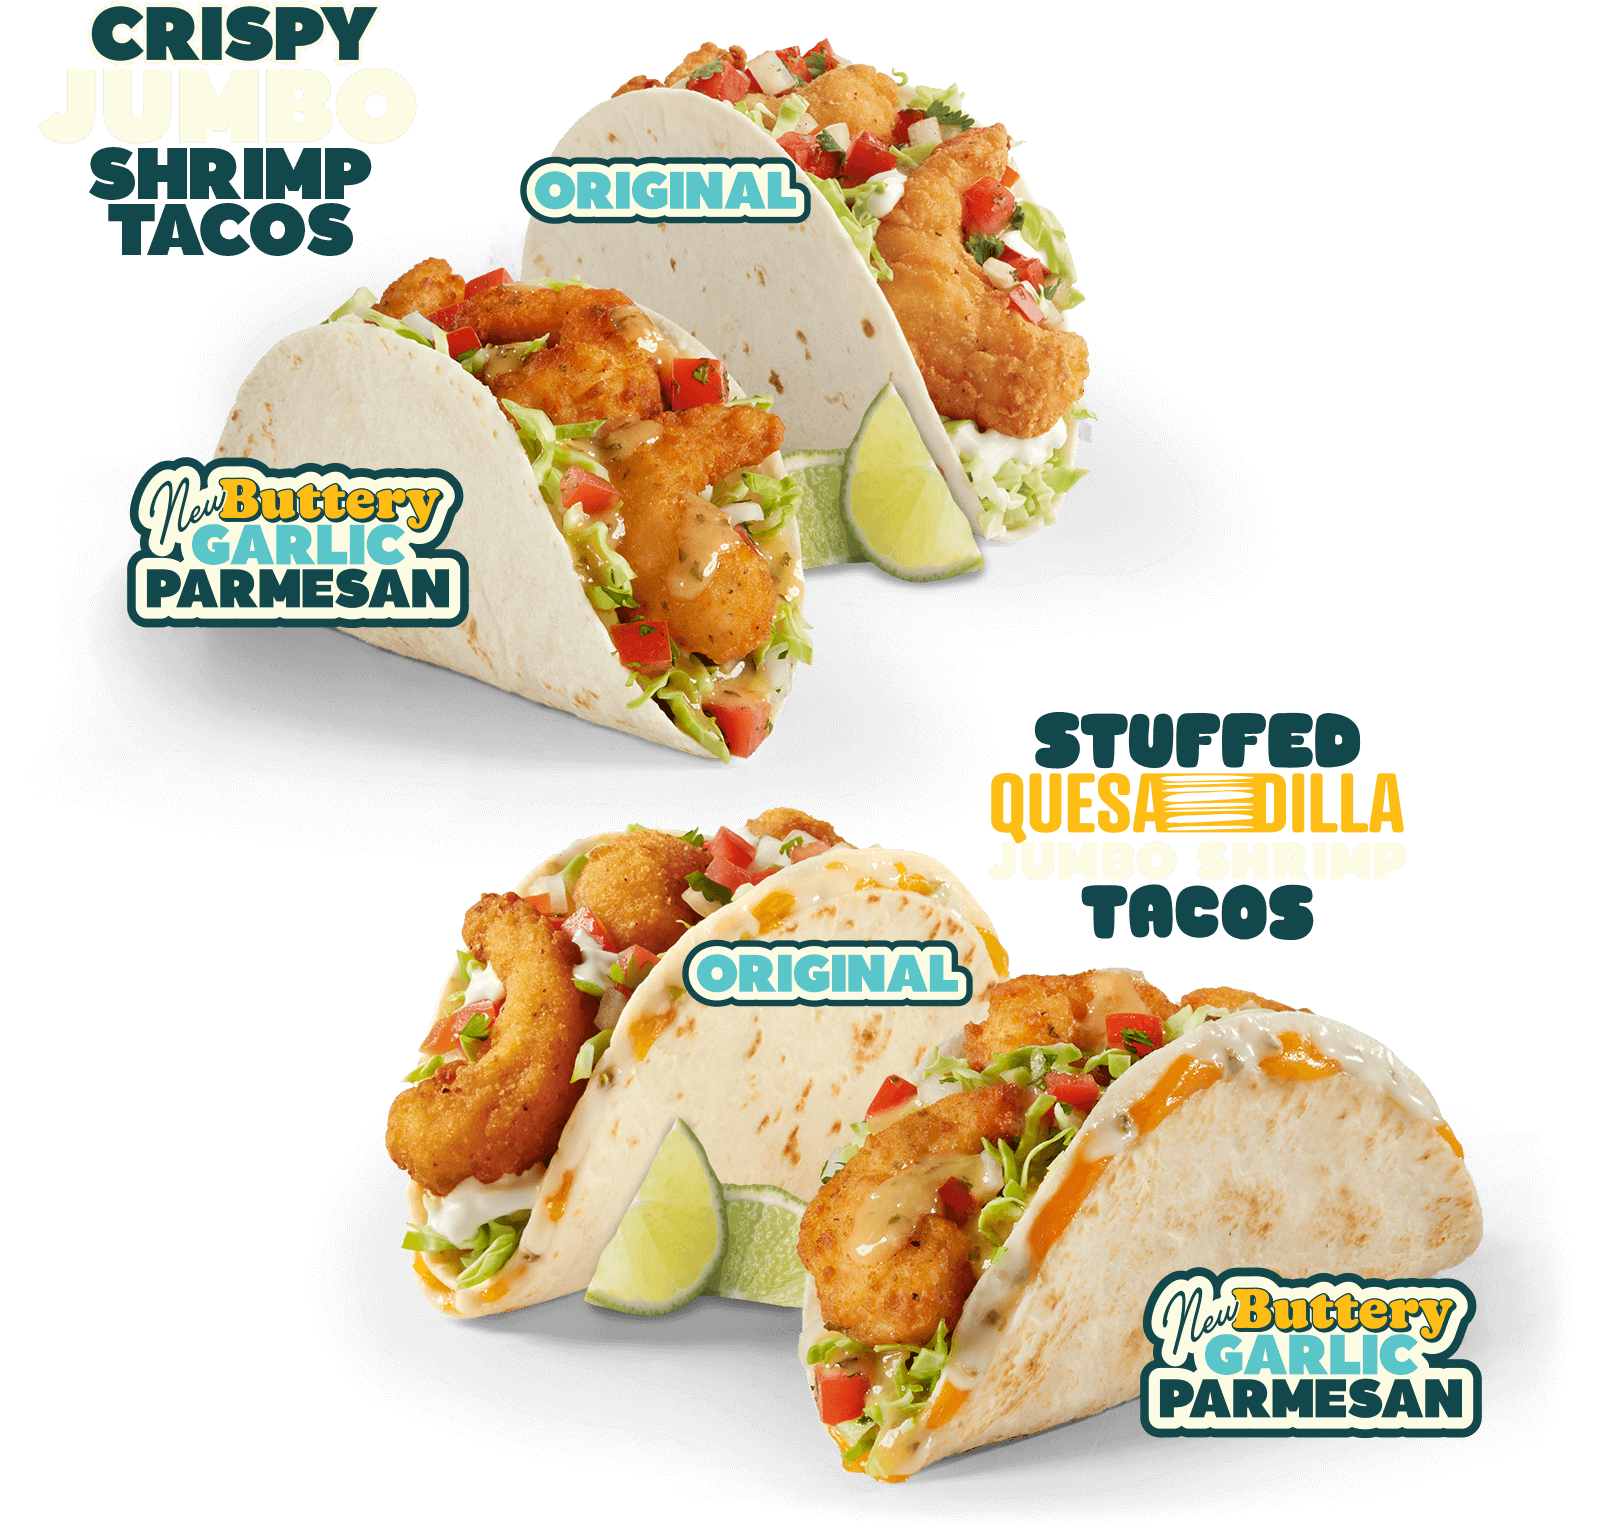 Crispy Jumbo Shrimp Tacos. Original and New Buttery Garlic Parmesan Tacos. Original and New Buttery Garlic Parmesan Stuffed Quesadilla Jumbo Shrimp Tacos.